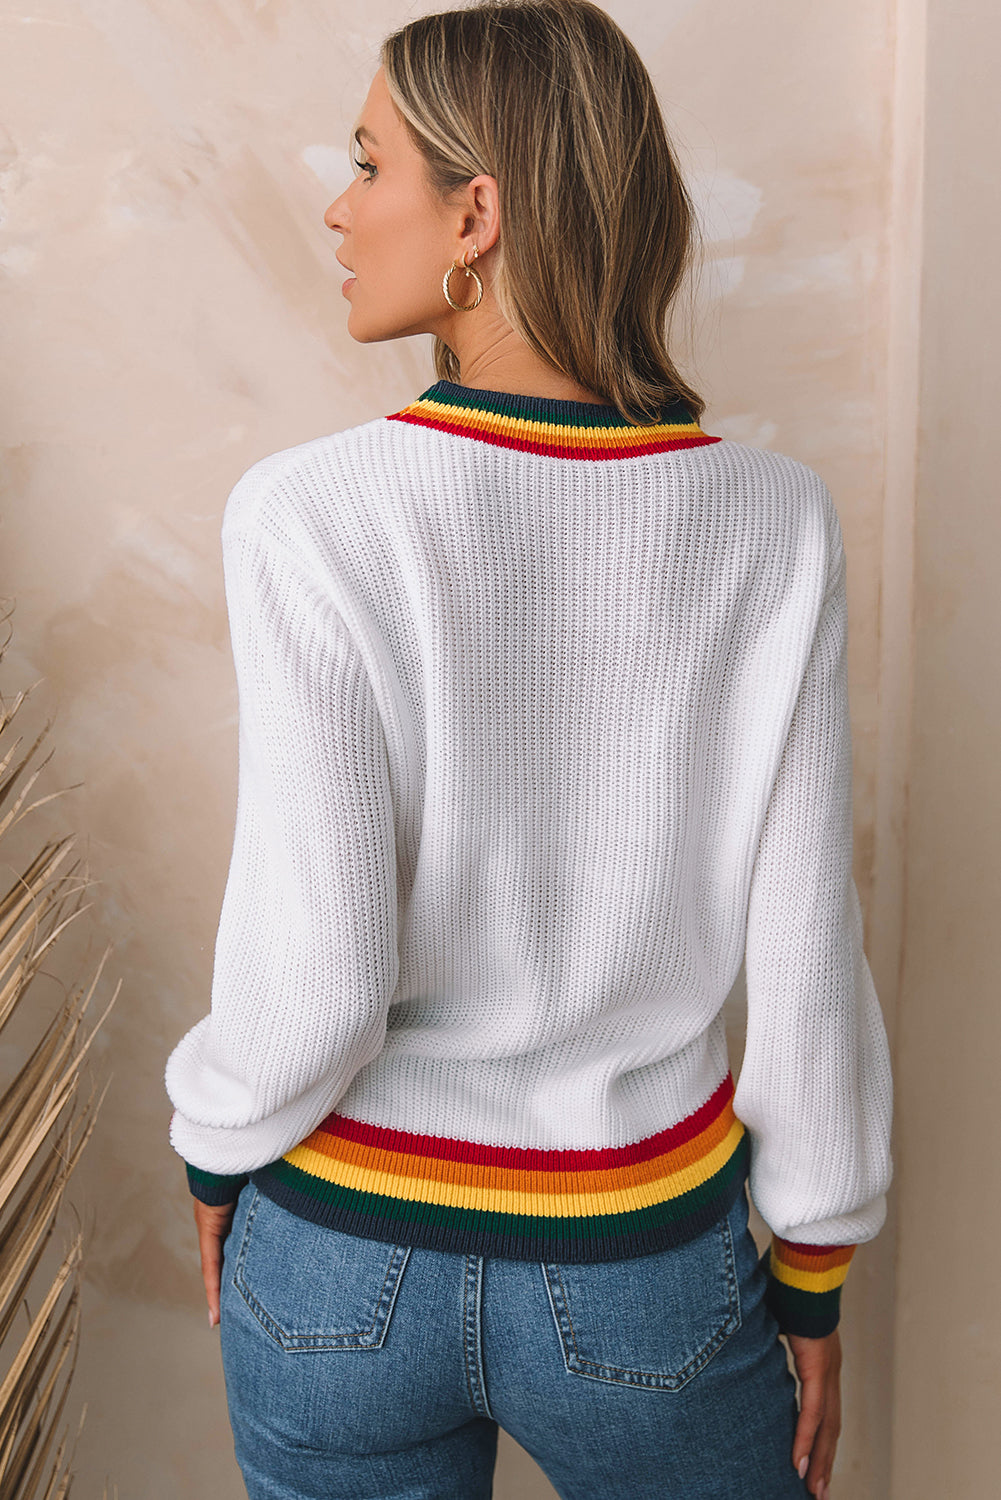 Maglione con finiture a strisce colorate allegre e luminose bianche